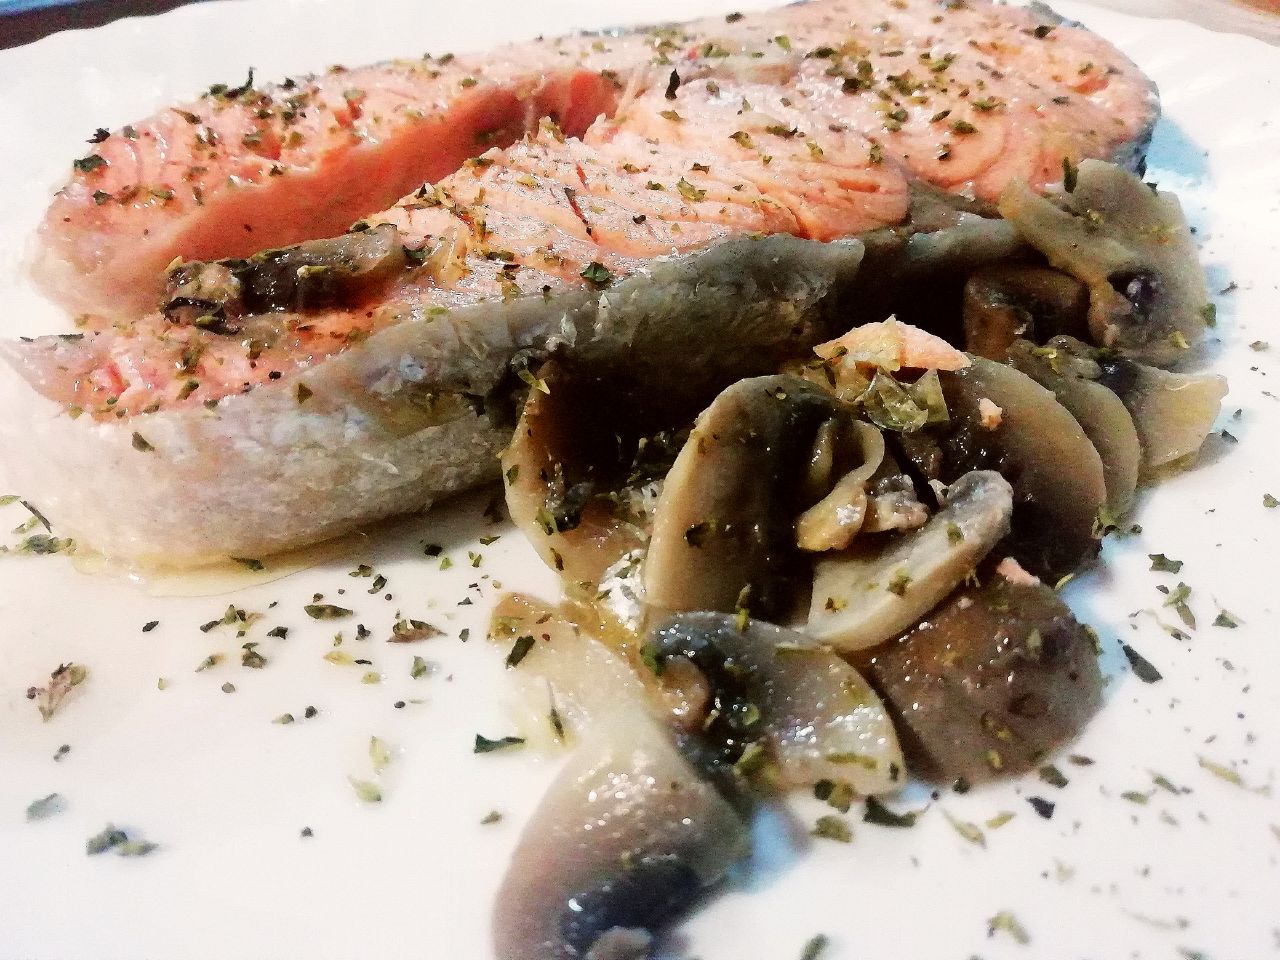 Secondi piatti a base di pesce: filetto di salmone ai funghi champignon!